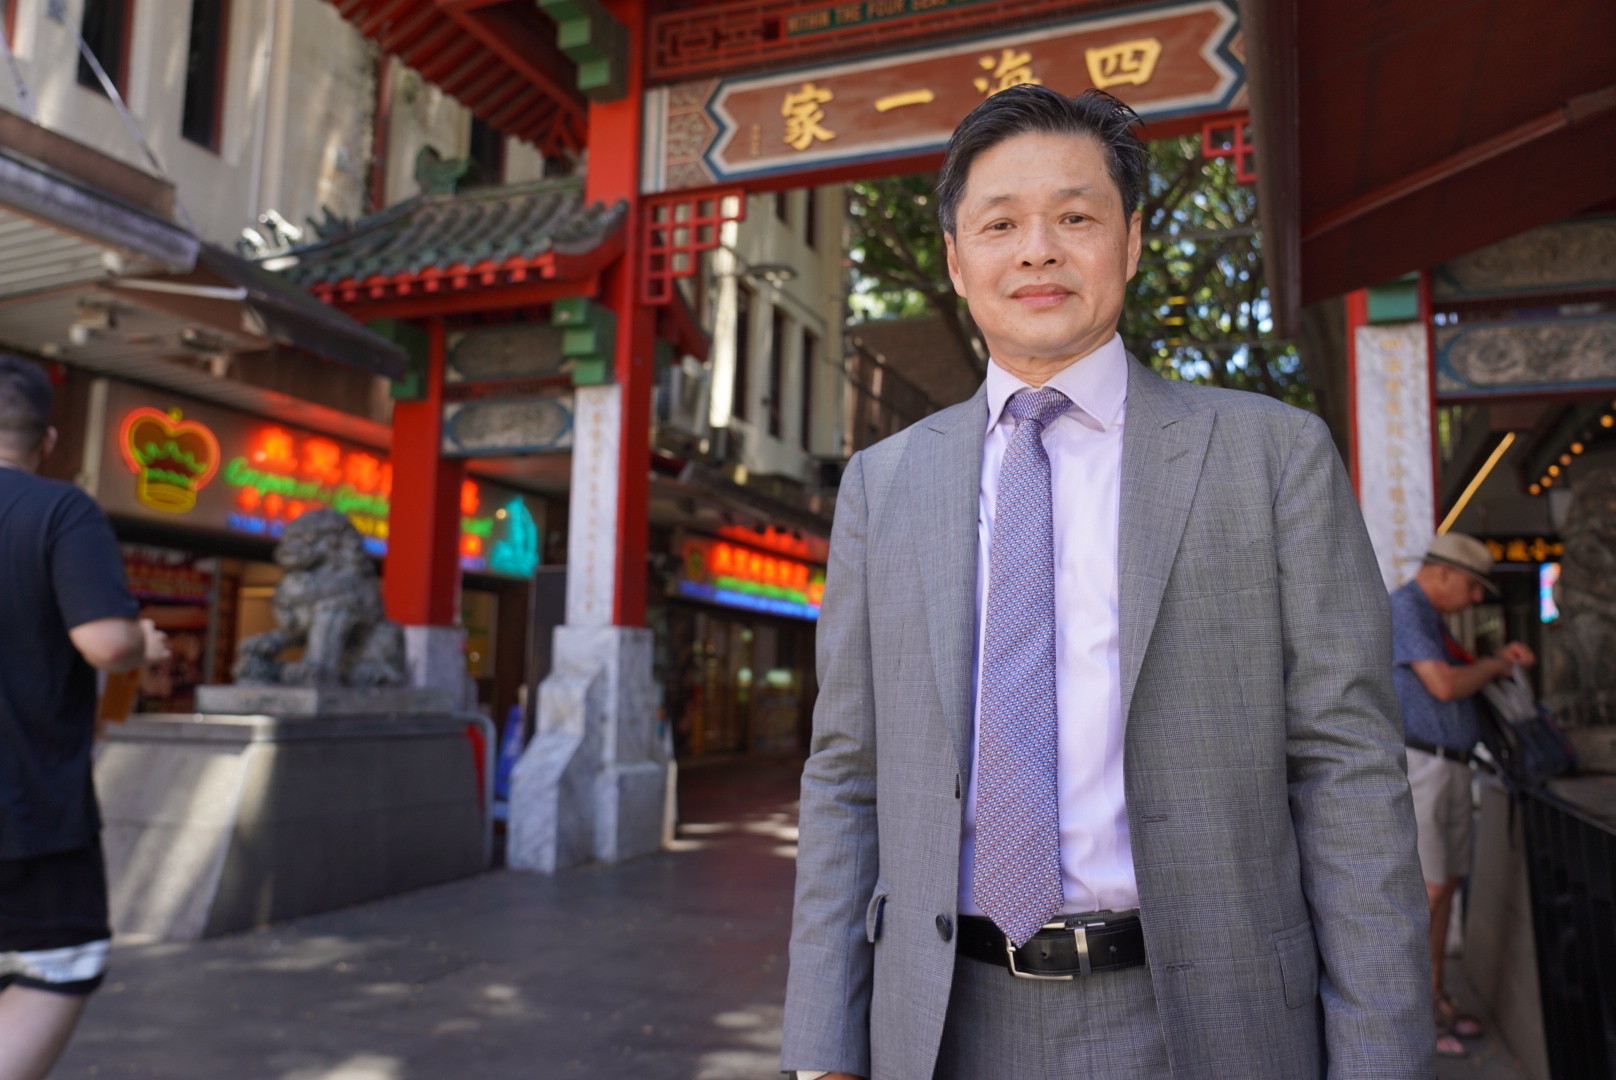 Un hombre vestido con traje gris, corbata y camisa color lavanda se encuentra frente a un paifang chino y restaurantes.